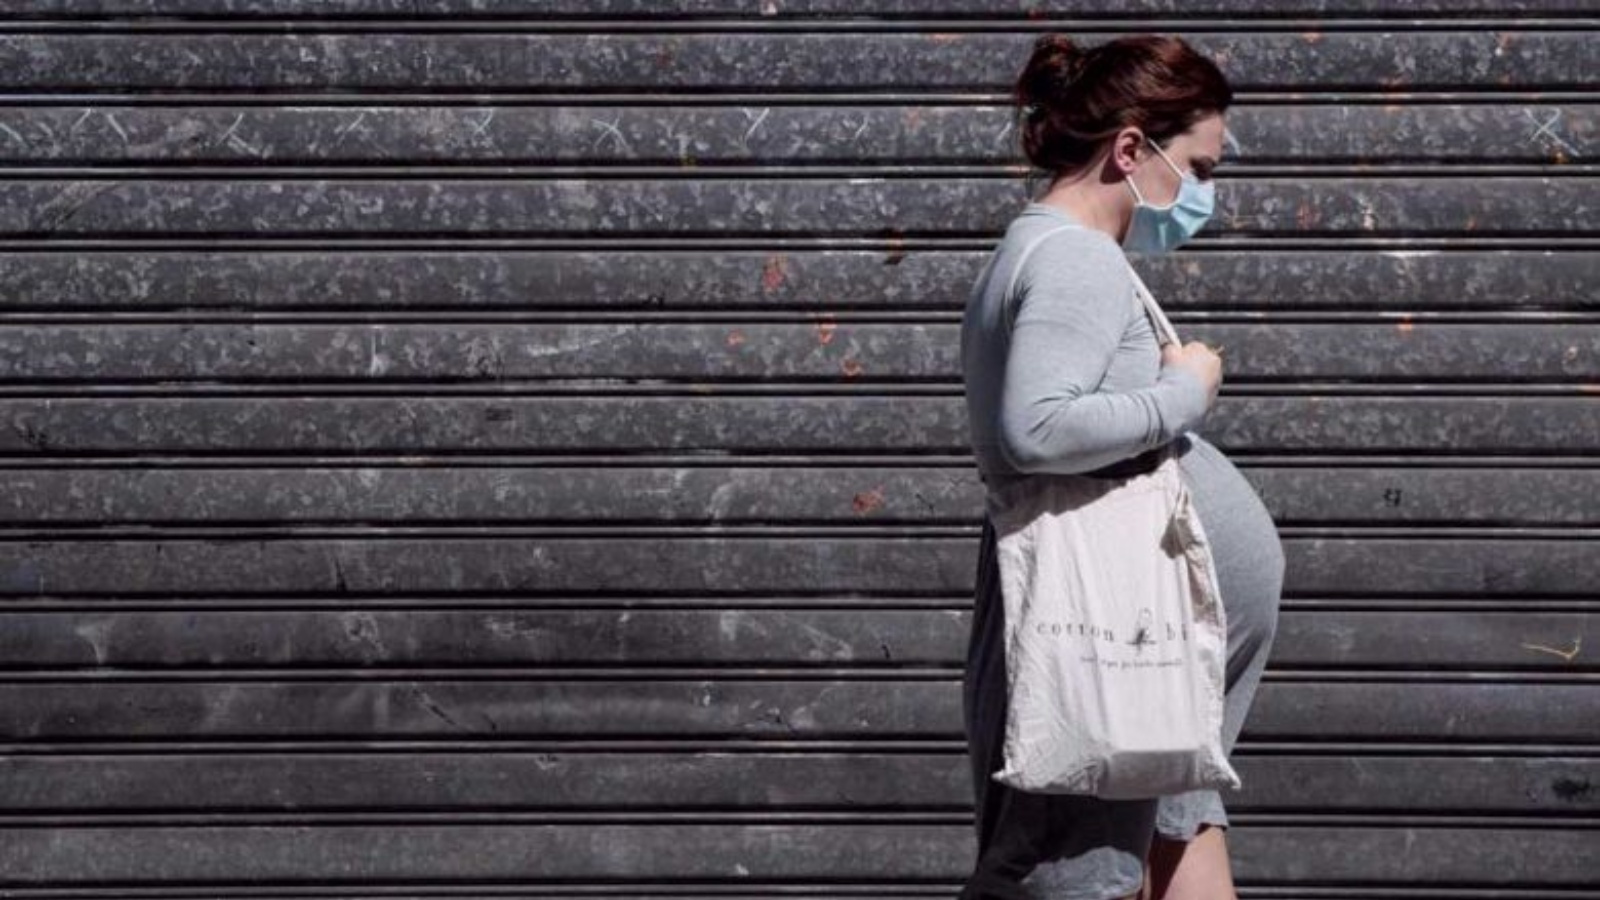 امرأة حامل في أحد شوارع باريس (توضيحية)